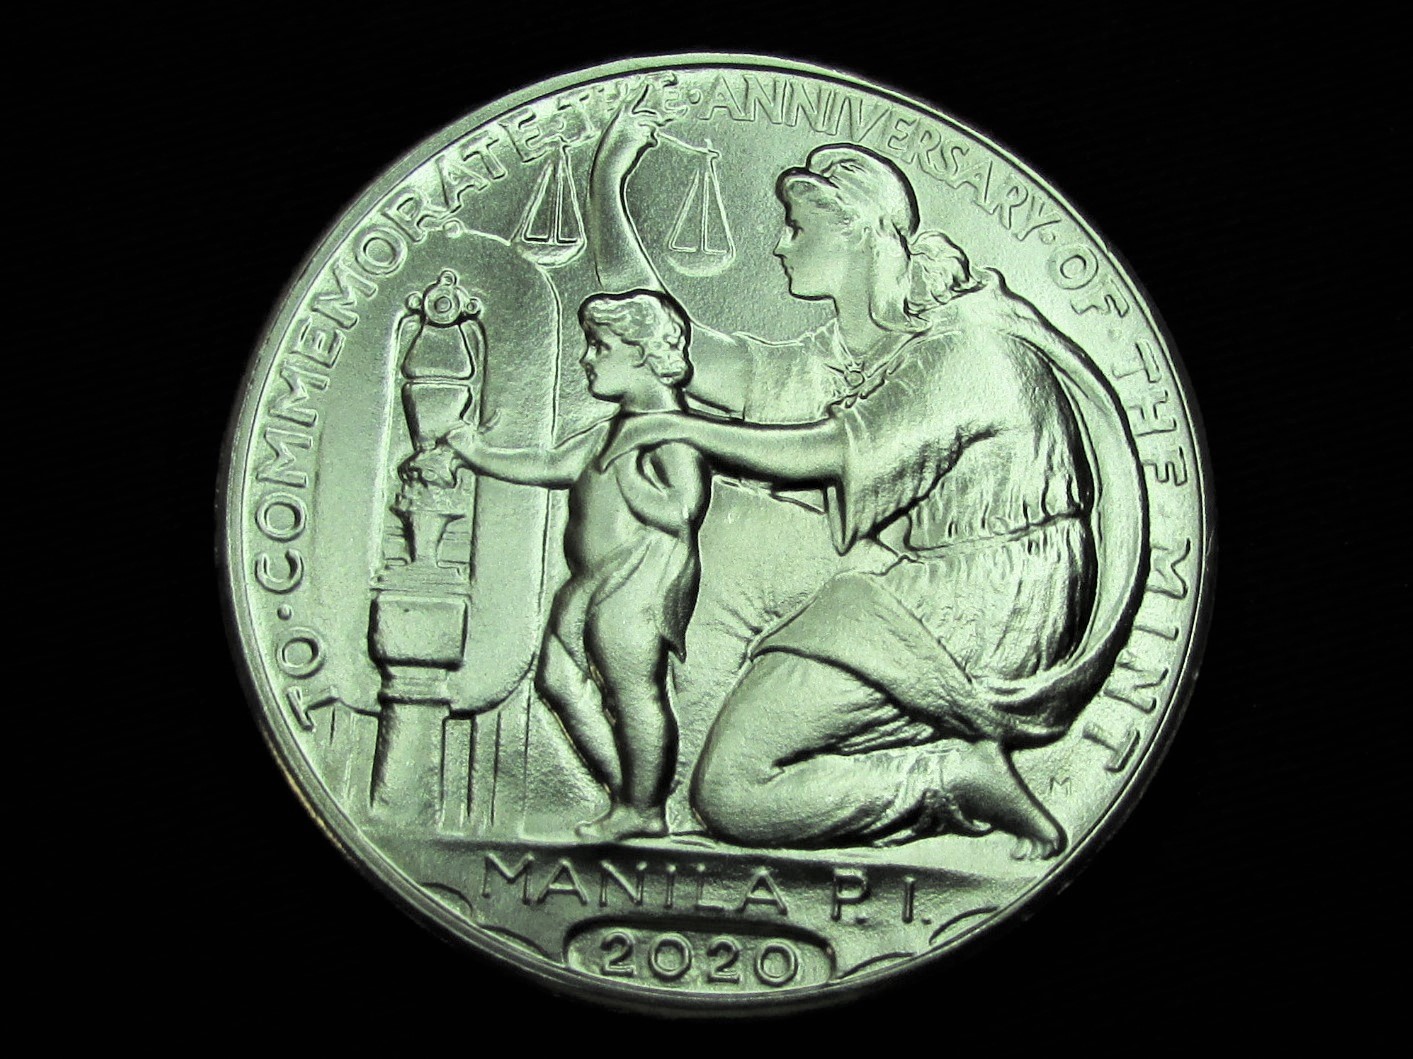 2020 Wilson 100 Year Anniversary Medal (Nickel) - reverse.JPG